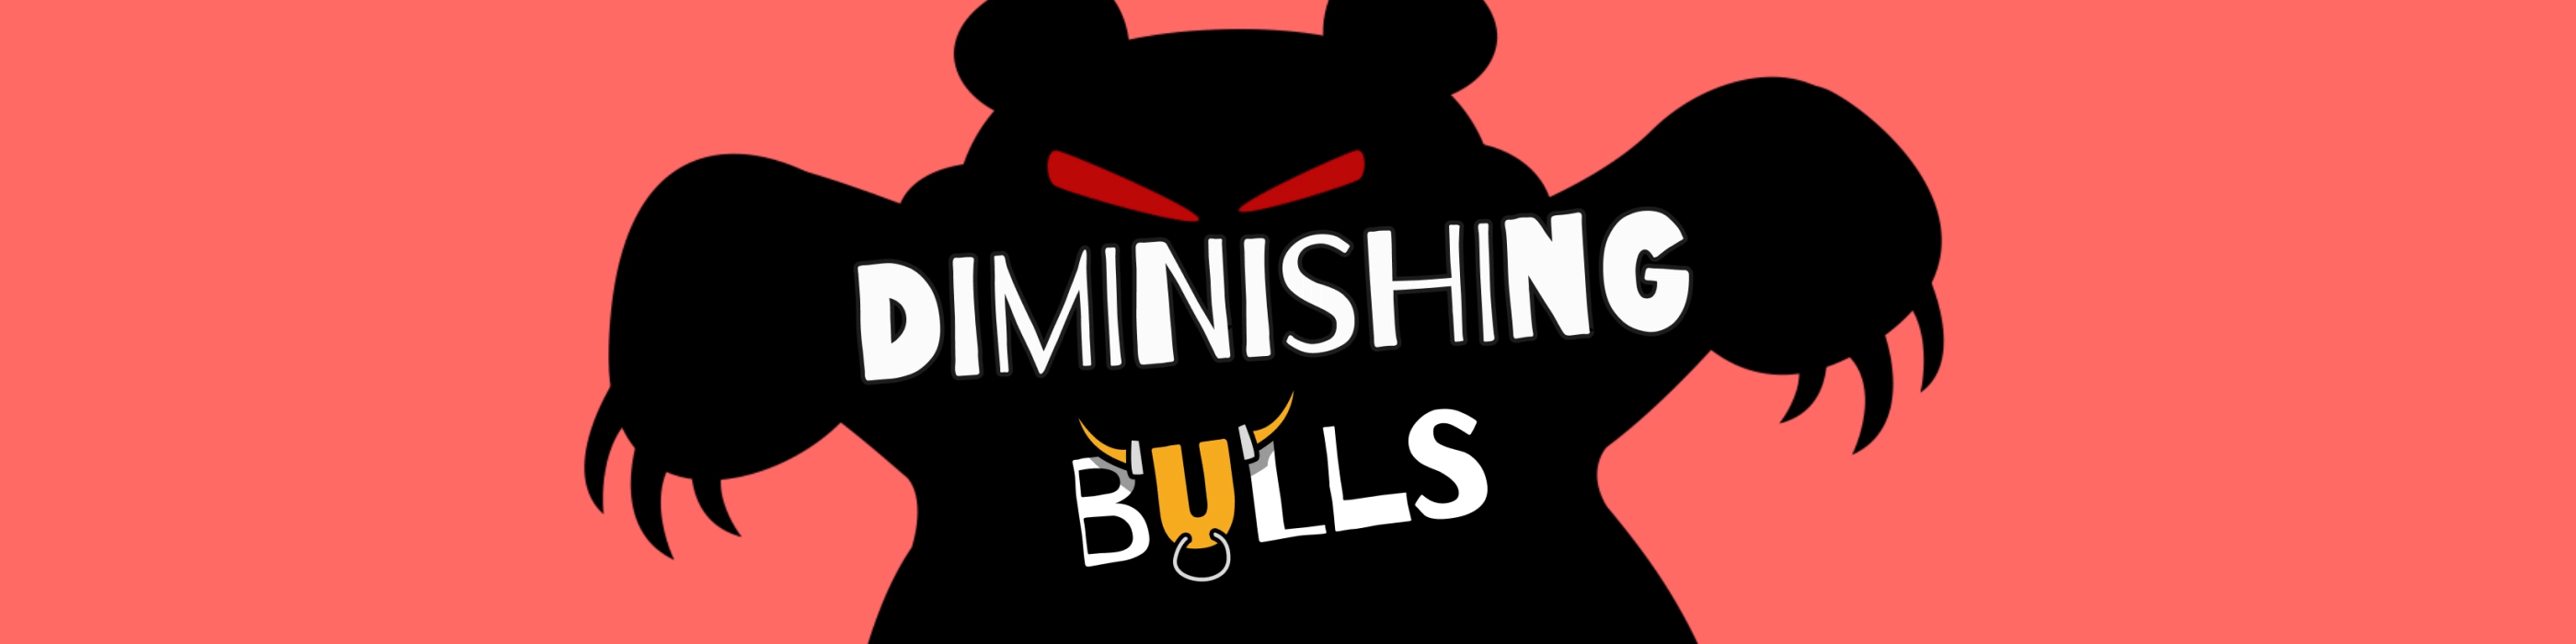 Diminishing bulls